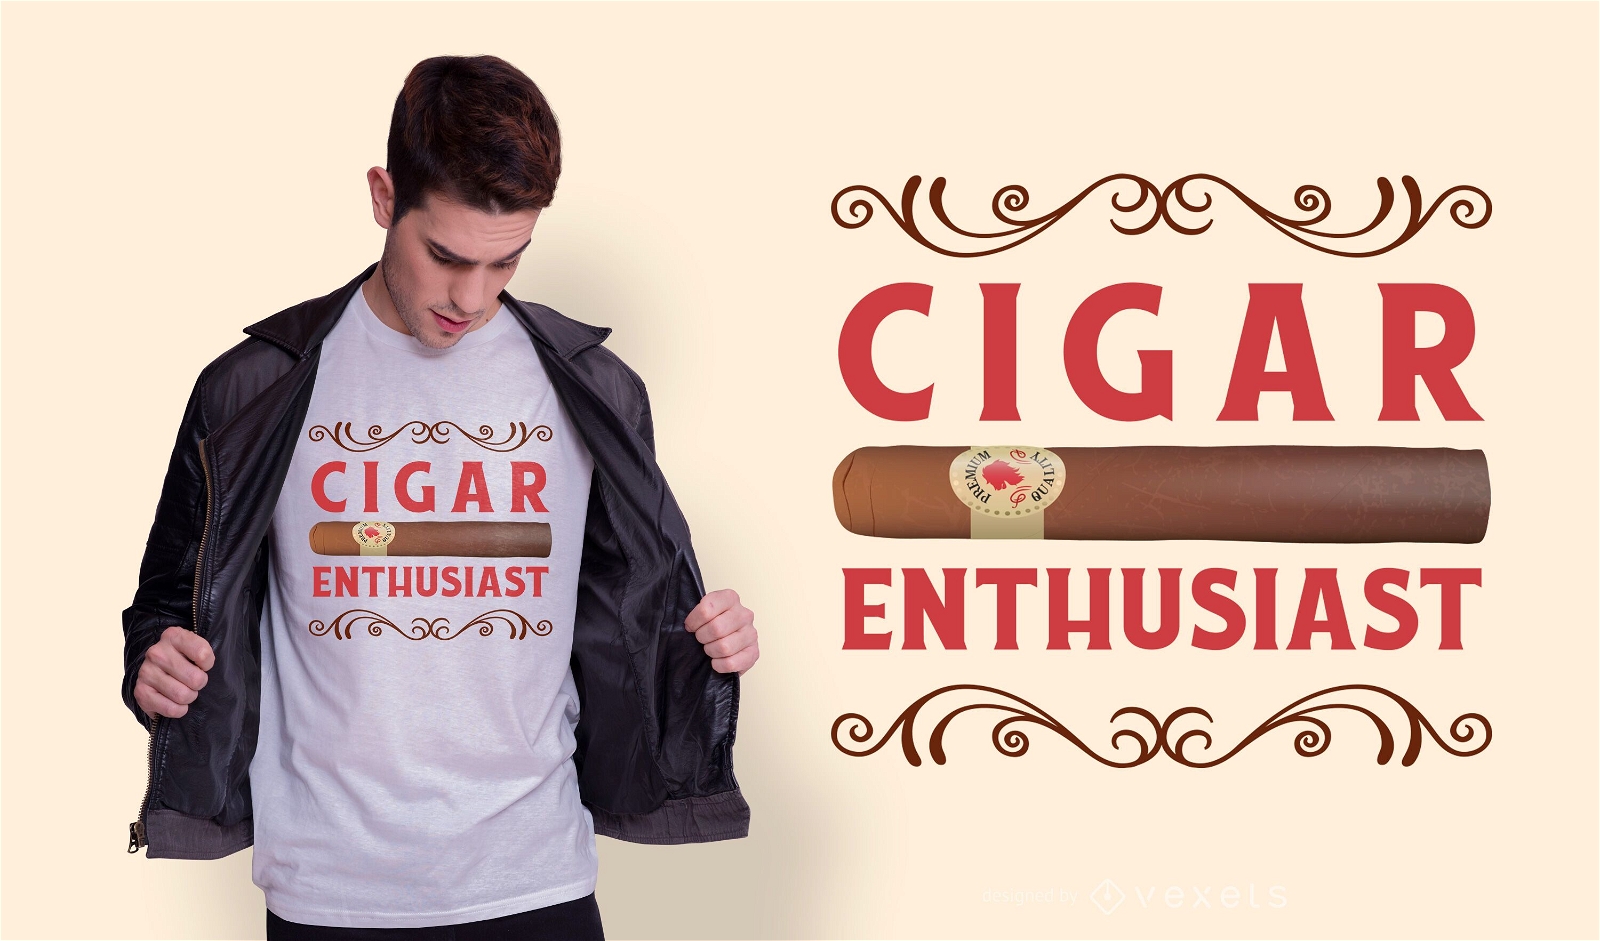 Dise?o de camiseta de entusiasta del cigarro